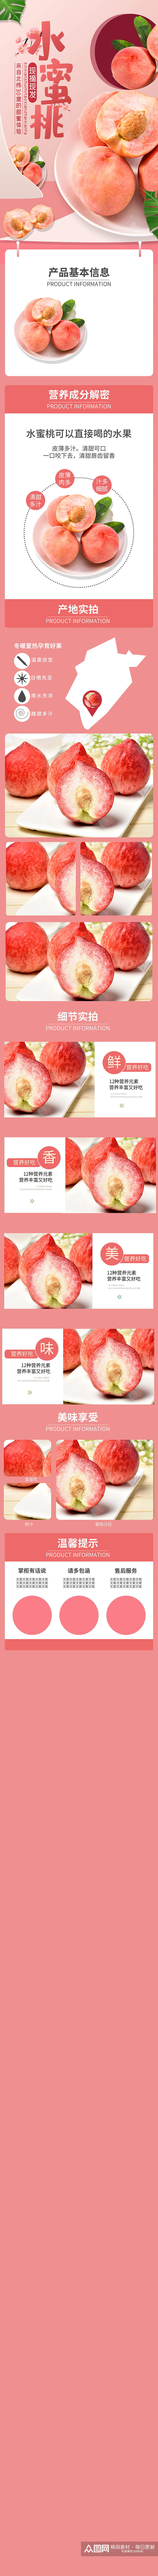 水果蔬菜水蜜桃子西瓜苹果樱桃橙子详情素材